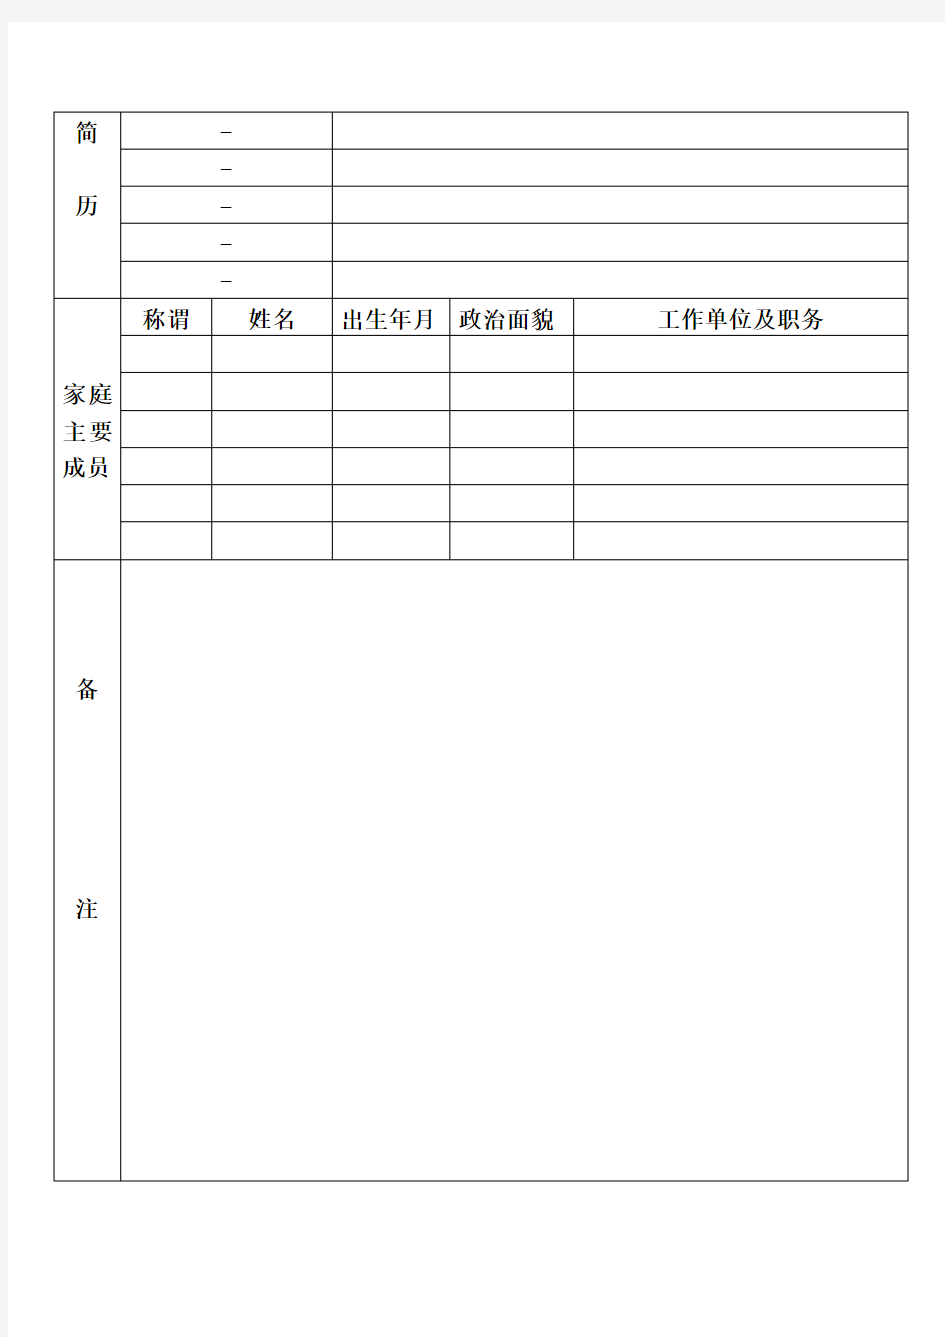 干部档案信息登记表